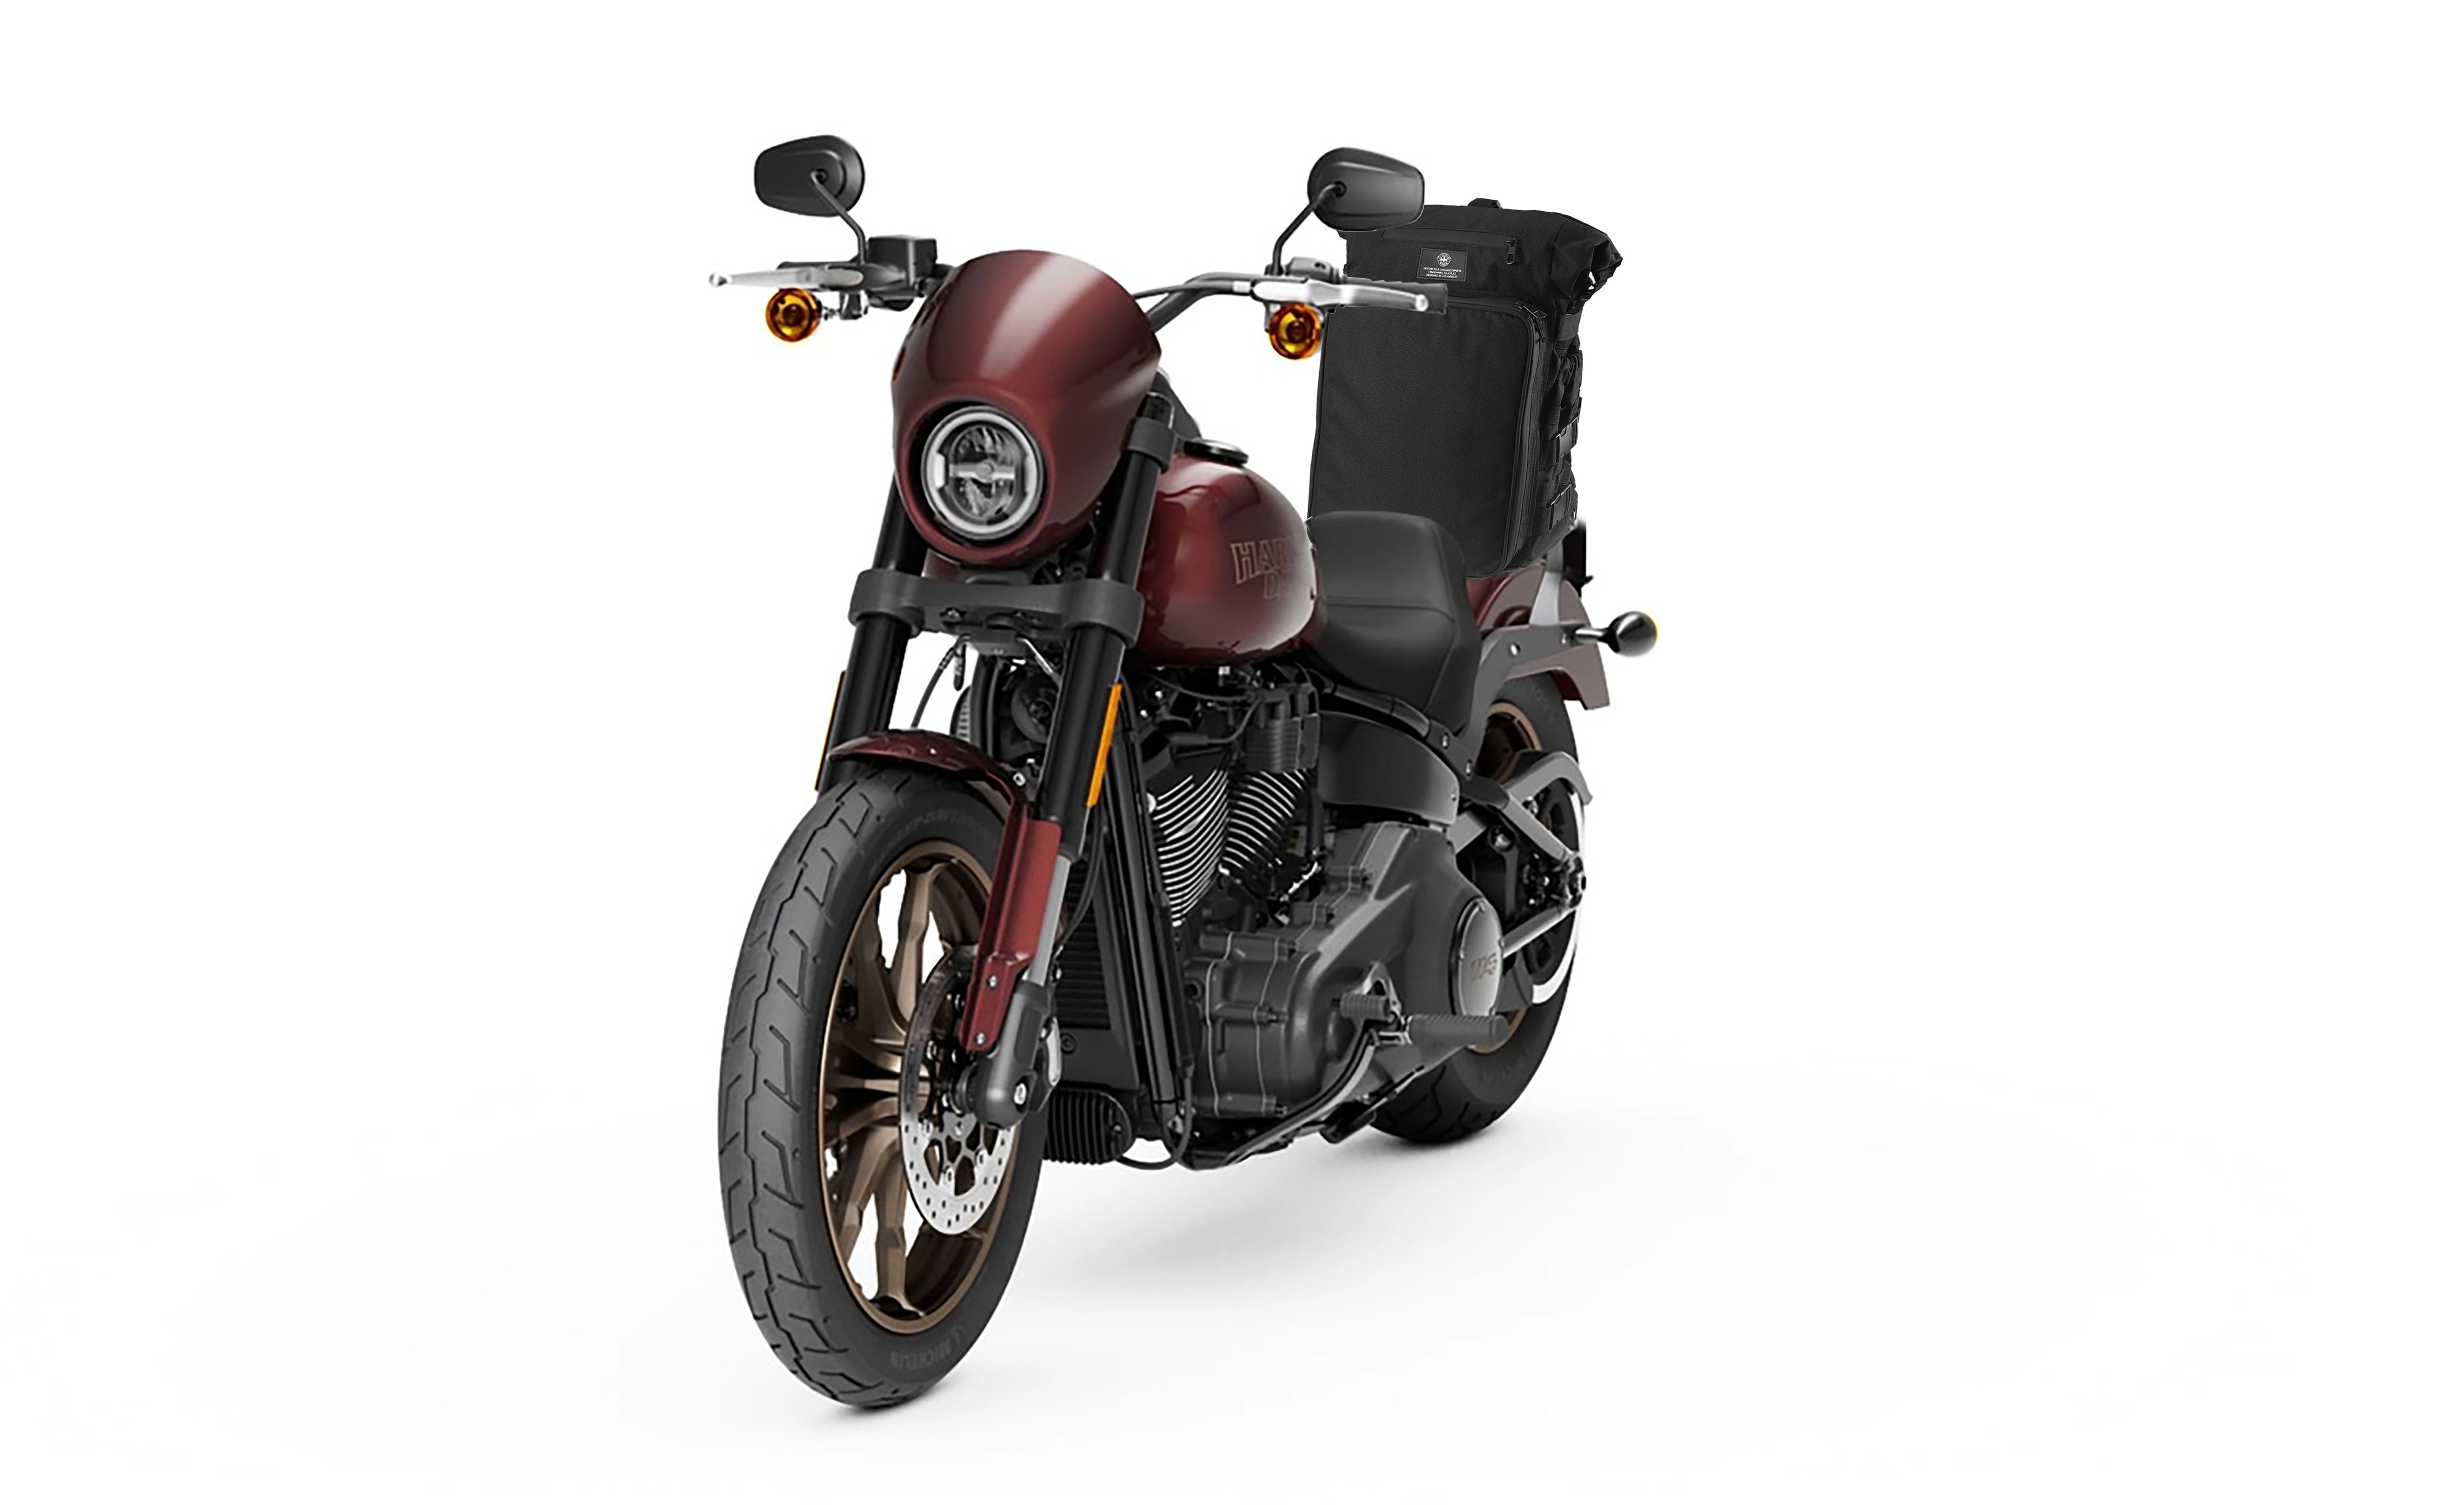 Viking Renegade XL Kawasaki Motorcycle Sissy Bar Bag Bag on Bike View @expand